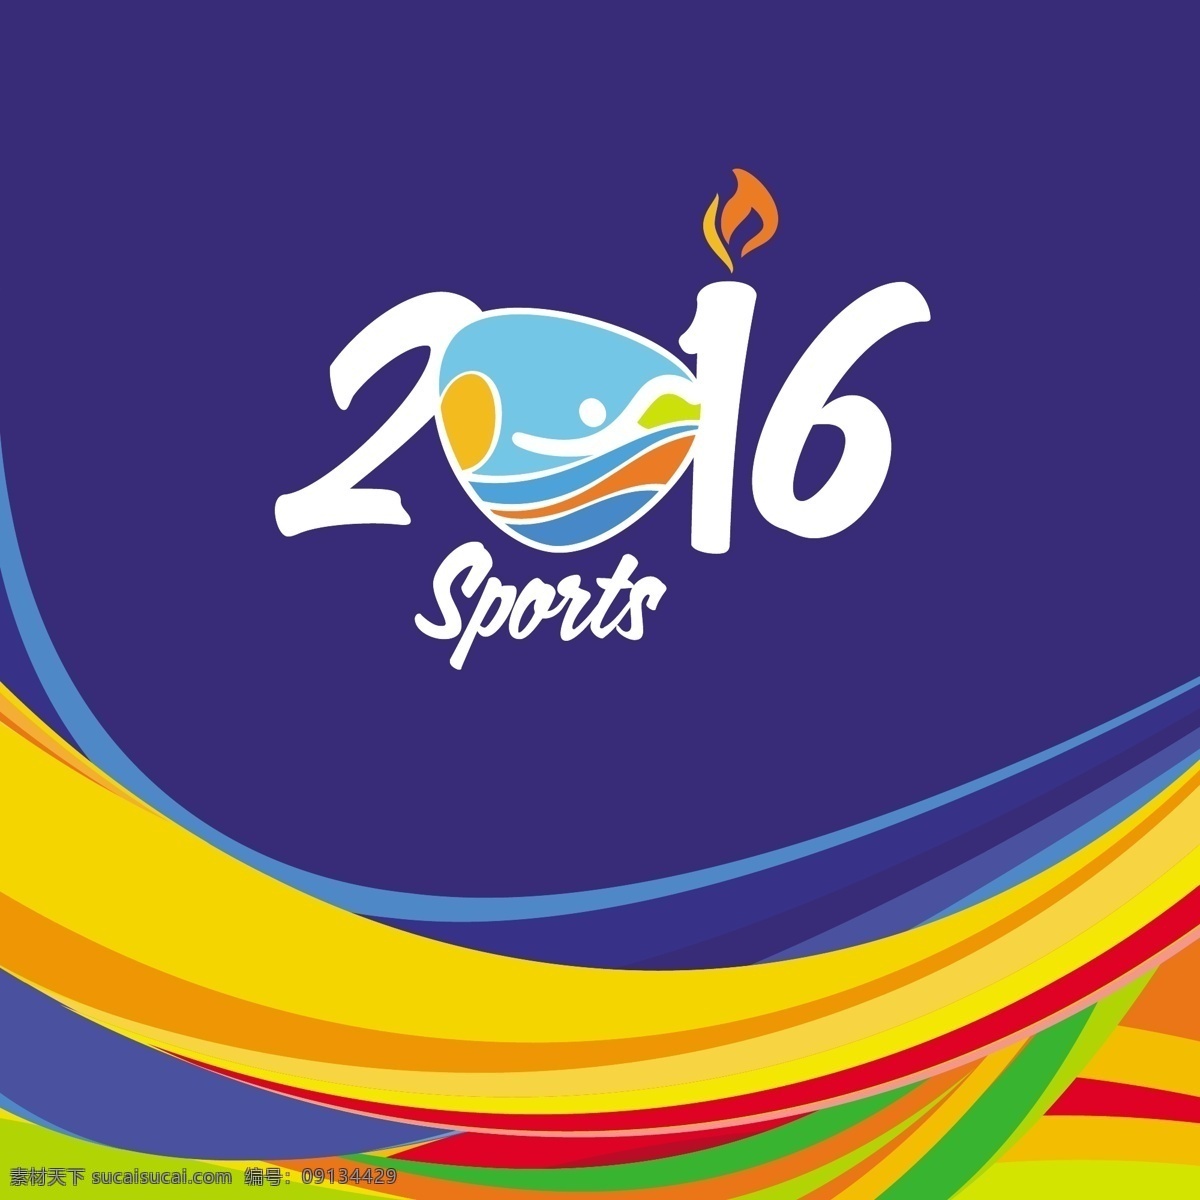 巴西彩色背景 巴西2016 2016巴西 矢量背景 2016 运动 蓝色